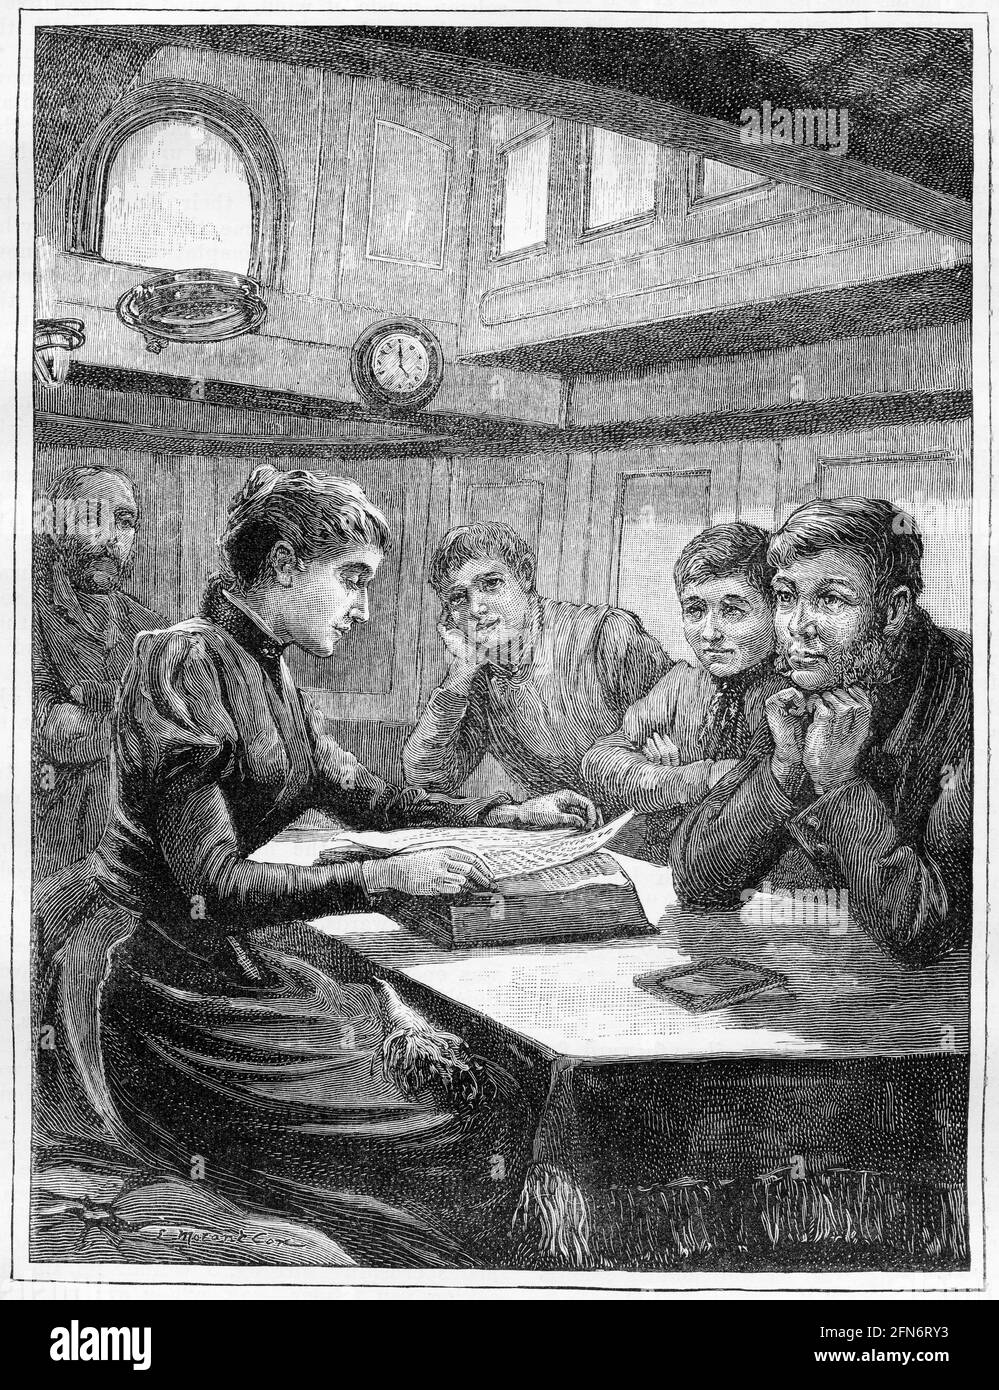 Gravure d'une femme lisant la Bible avec quelques marins sur un navire, vers 1890 Banque D'Images